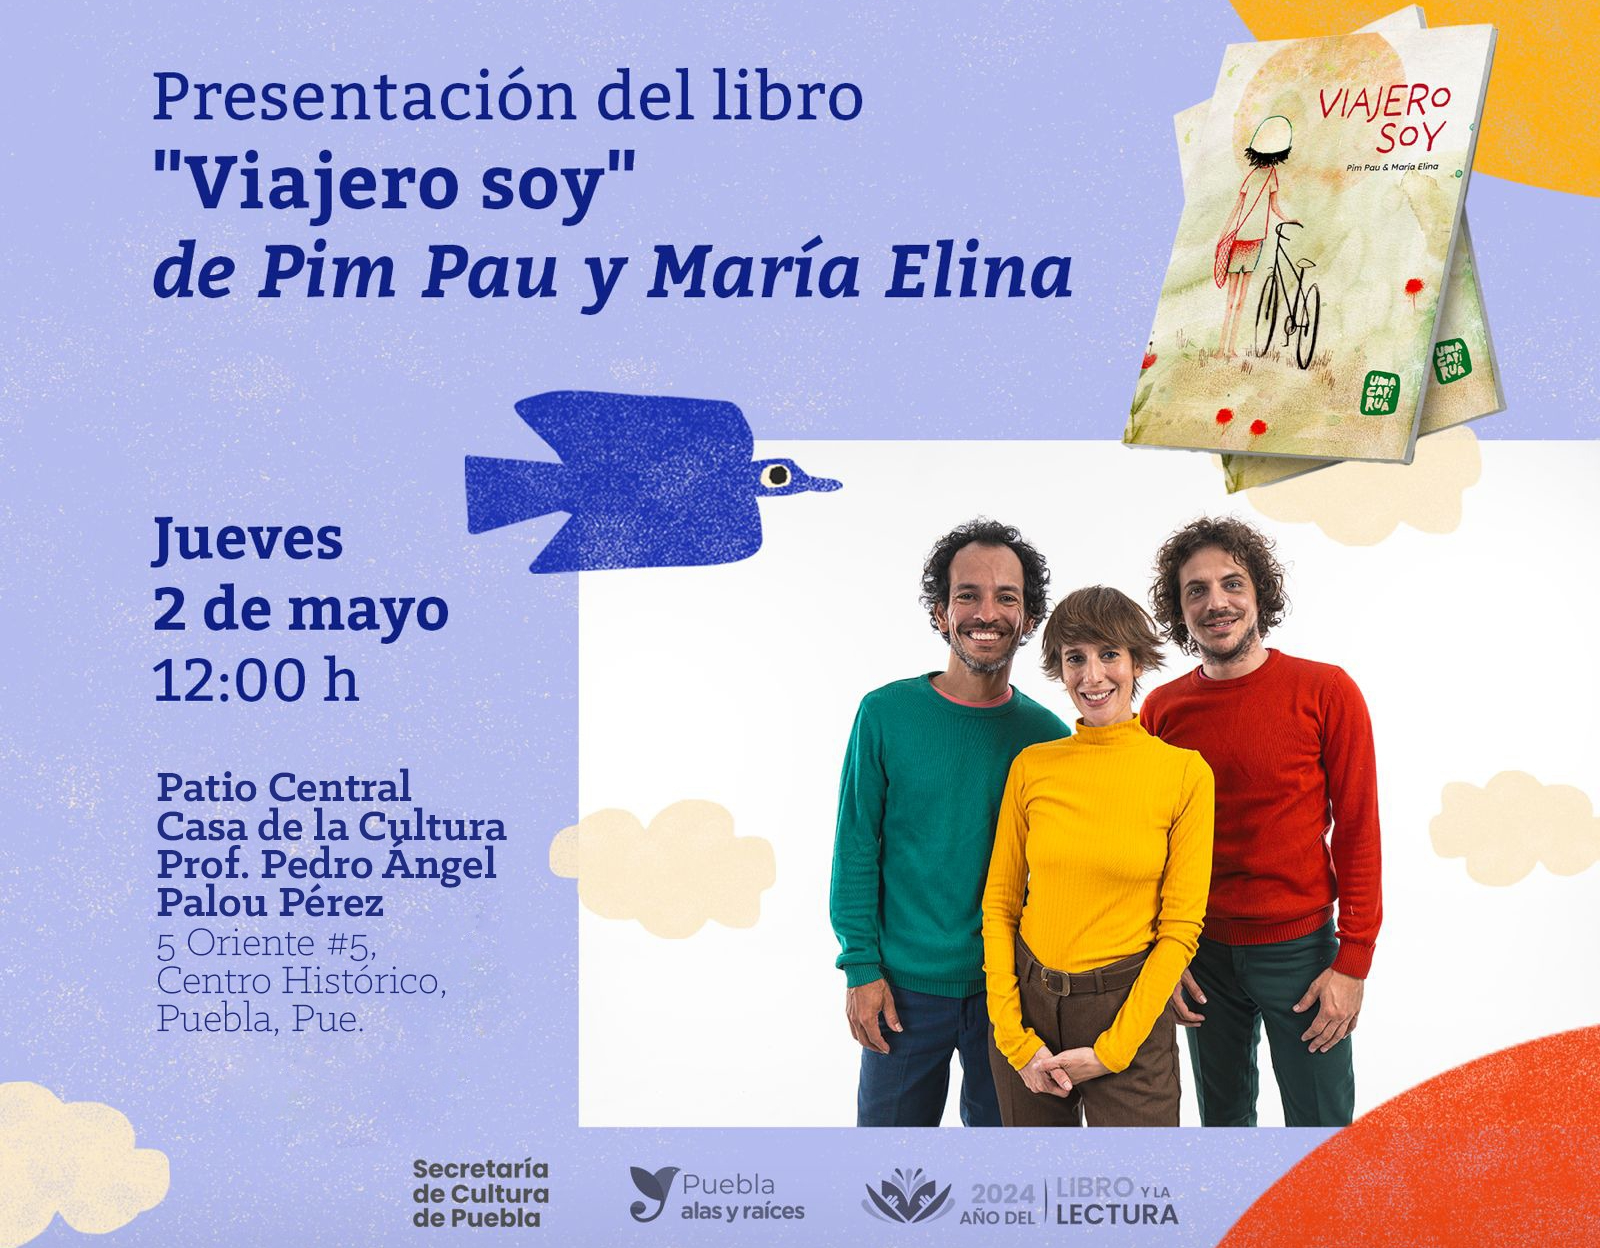 Agrupación de arte realizará en Puebla presentación del libro Viajero soy 